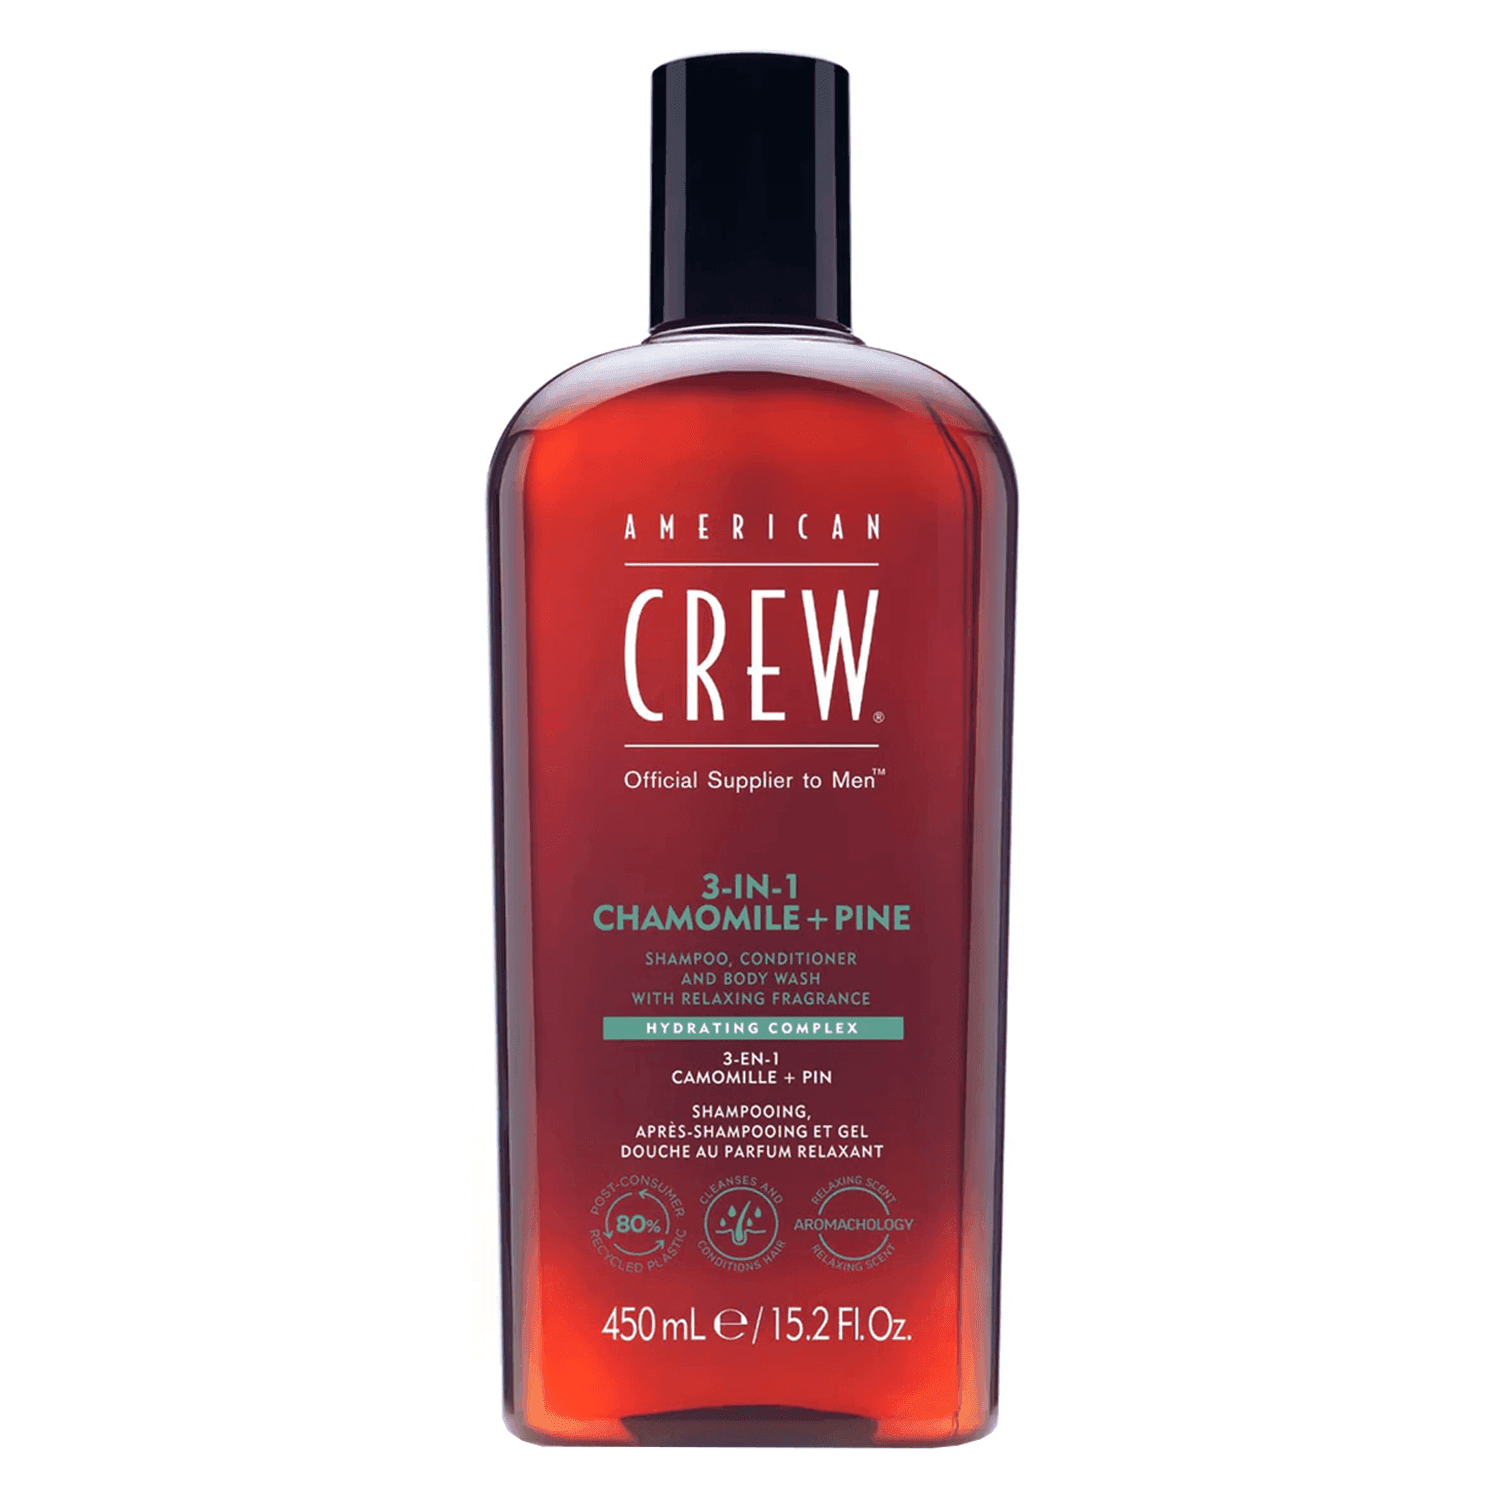 Crew Hair & Body Care - American Crew 3-in-1 Chamomile & Pine Shampoo, Conditioner & Body Wash